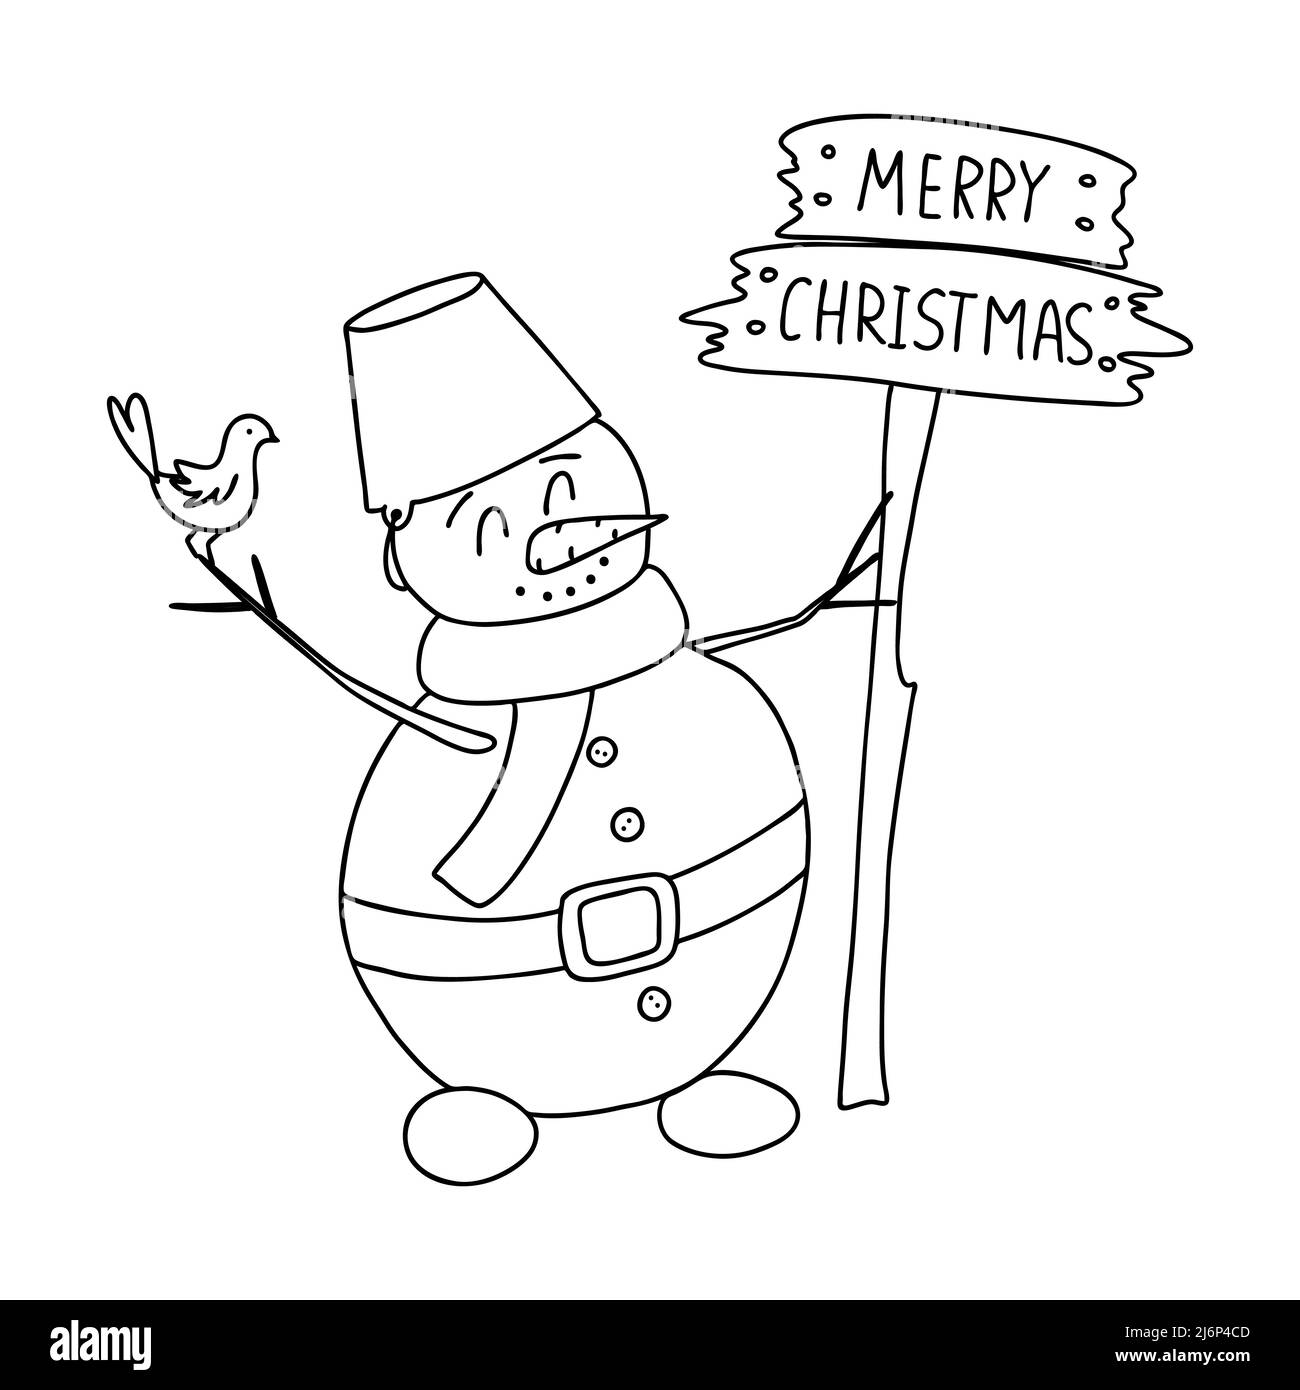 Schneemann im Schal mit Holzschild Frohe Weihnachten im Doodle-Stil. Die Skizze ist handgezeichnet und auf Weiß isoliert. Element des neuen Jahres und Design. Stock Vektor